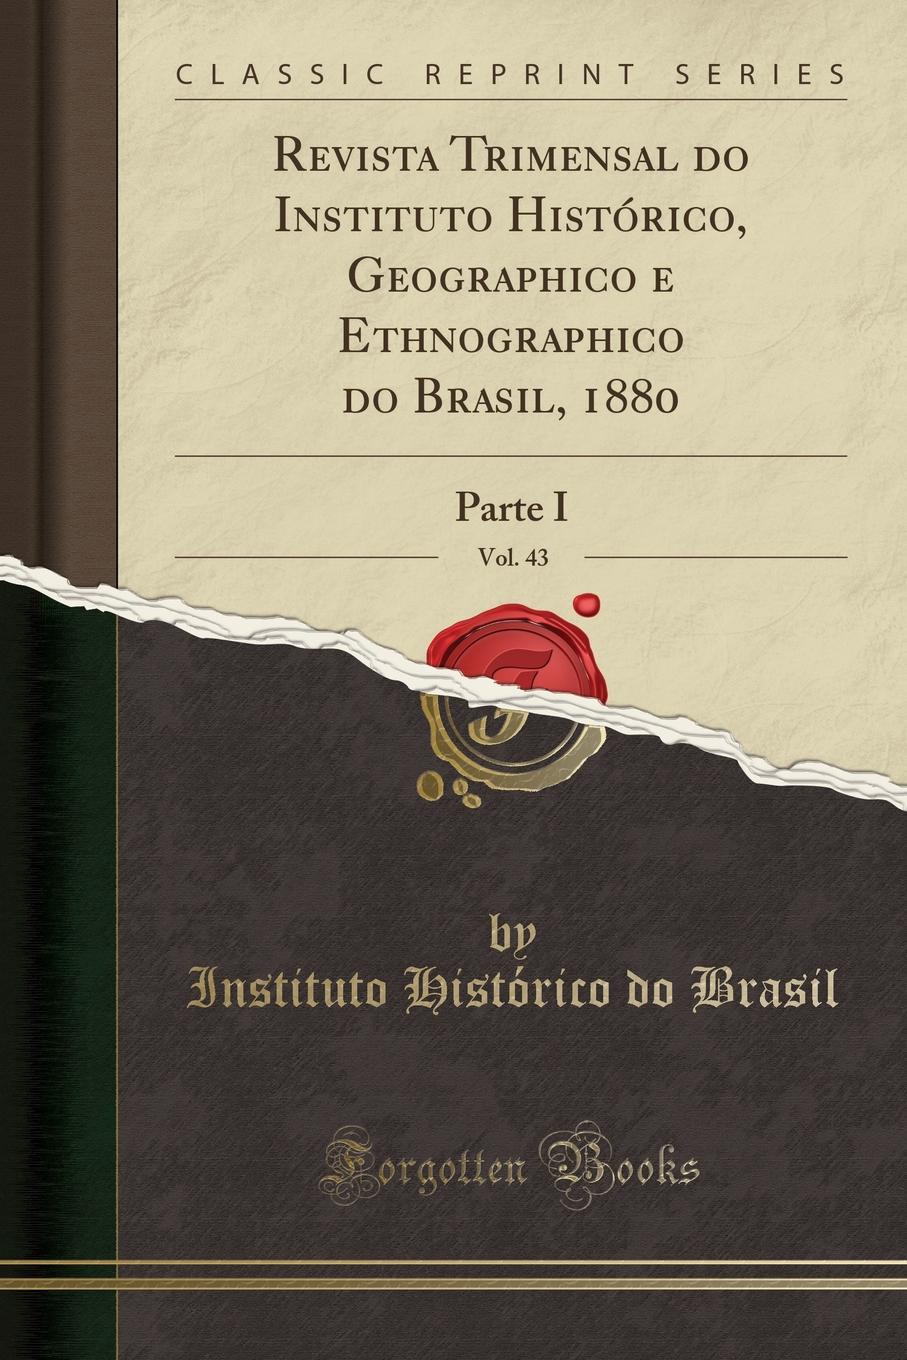 Instituto Histórico do Brasil Revista Trimensal do Instituto Historico, Geographico e Ethnographico do Brasil, 1880, Vol. 43. Parte I (Classic Reprint)